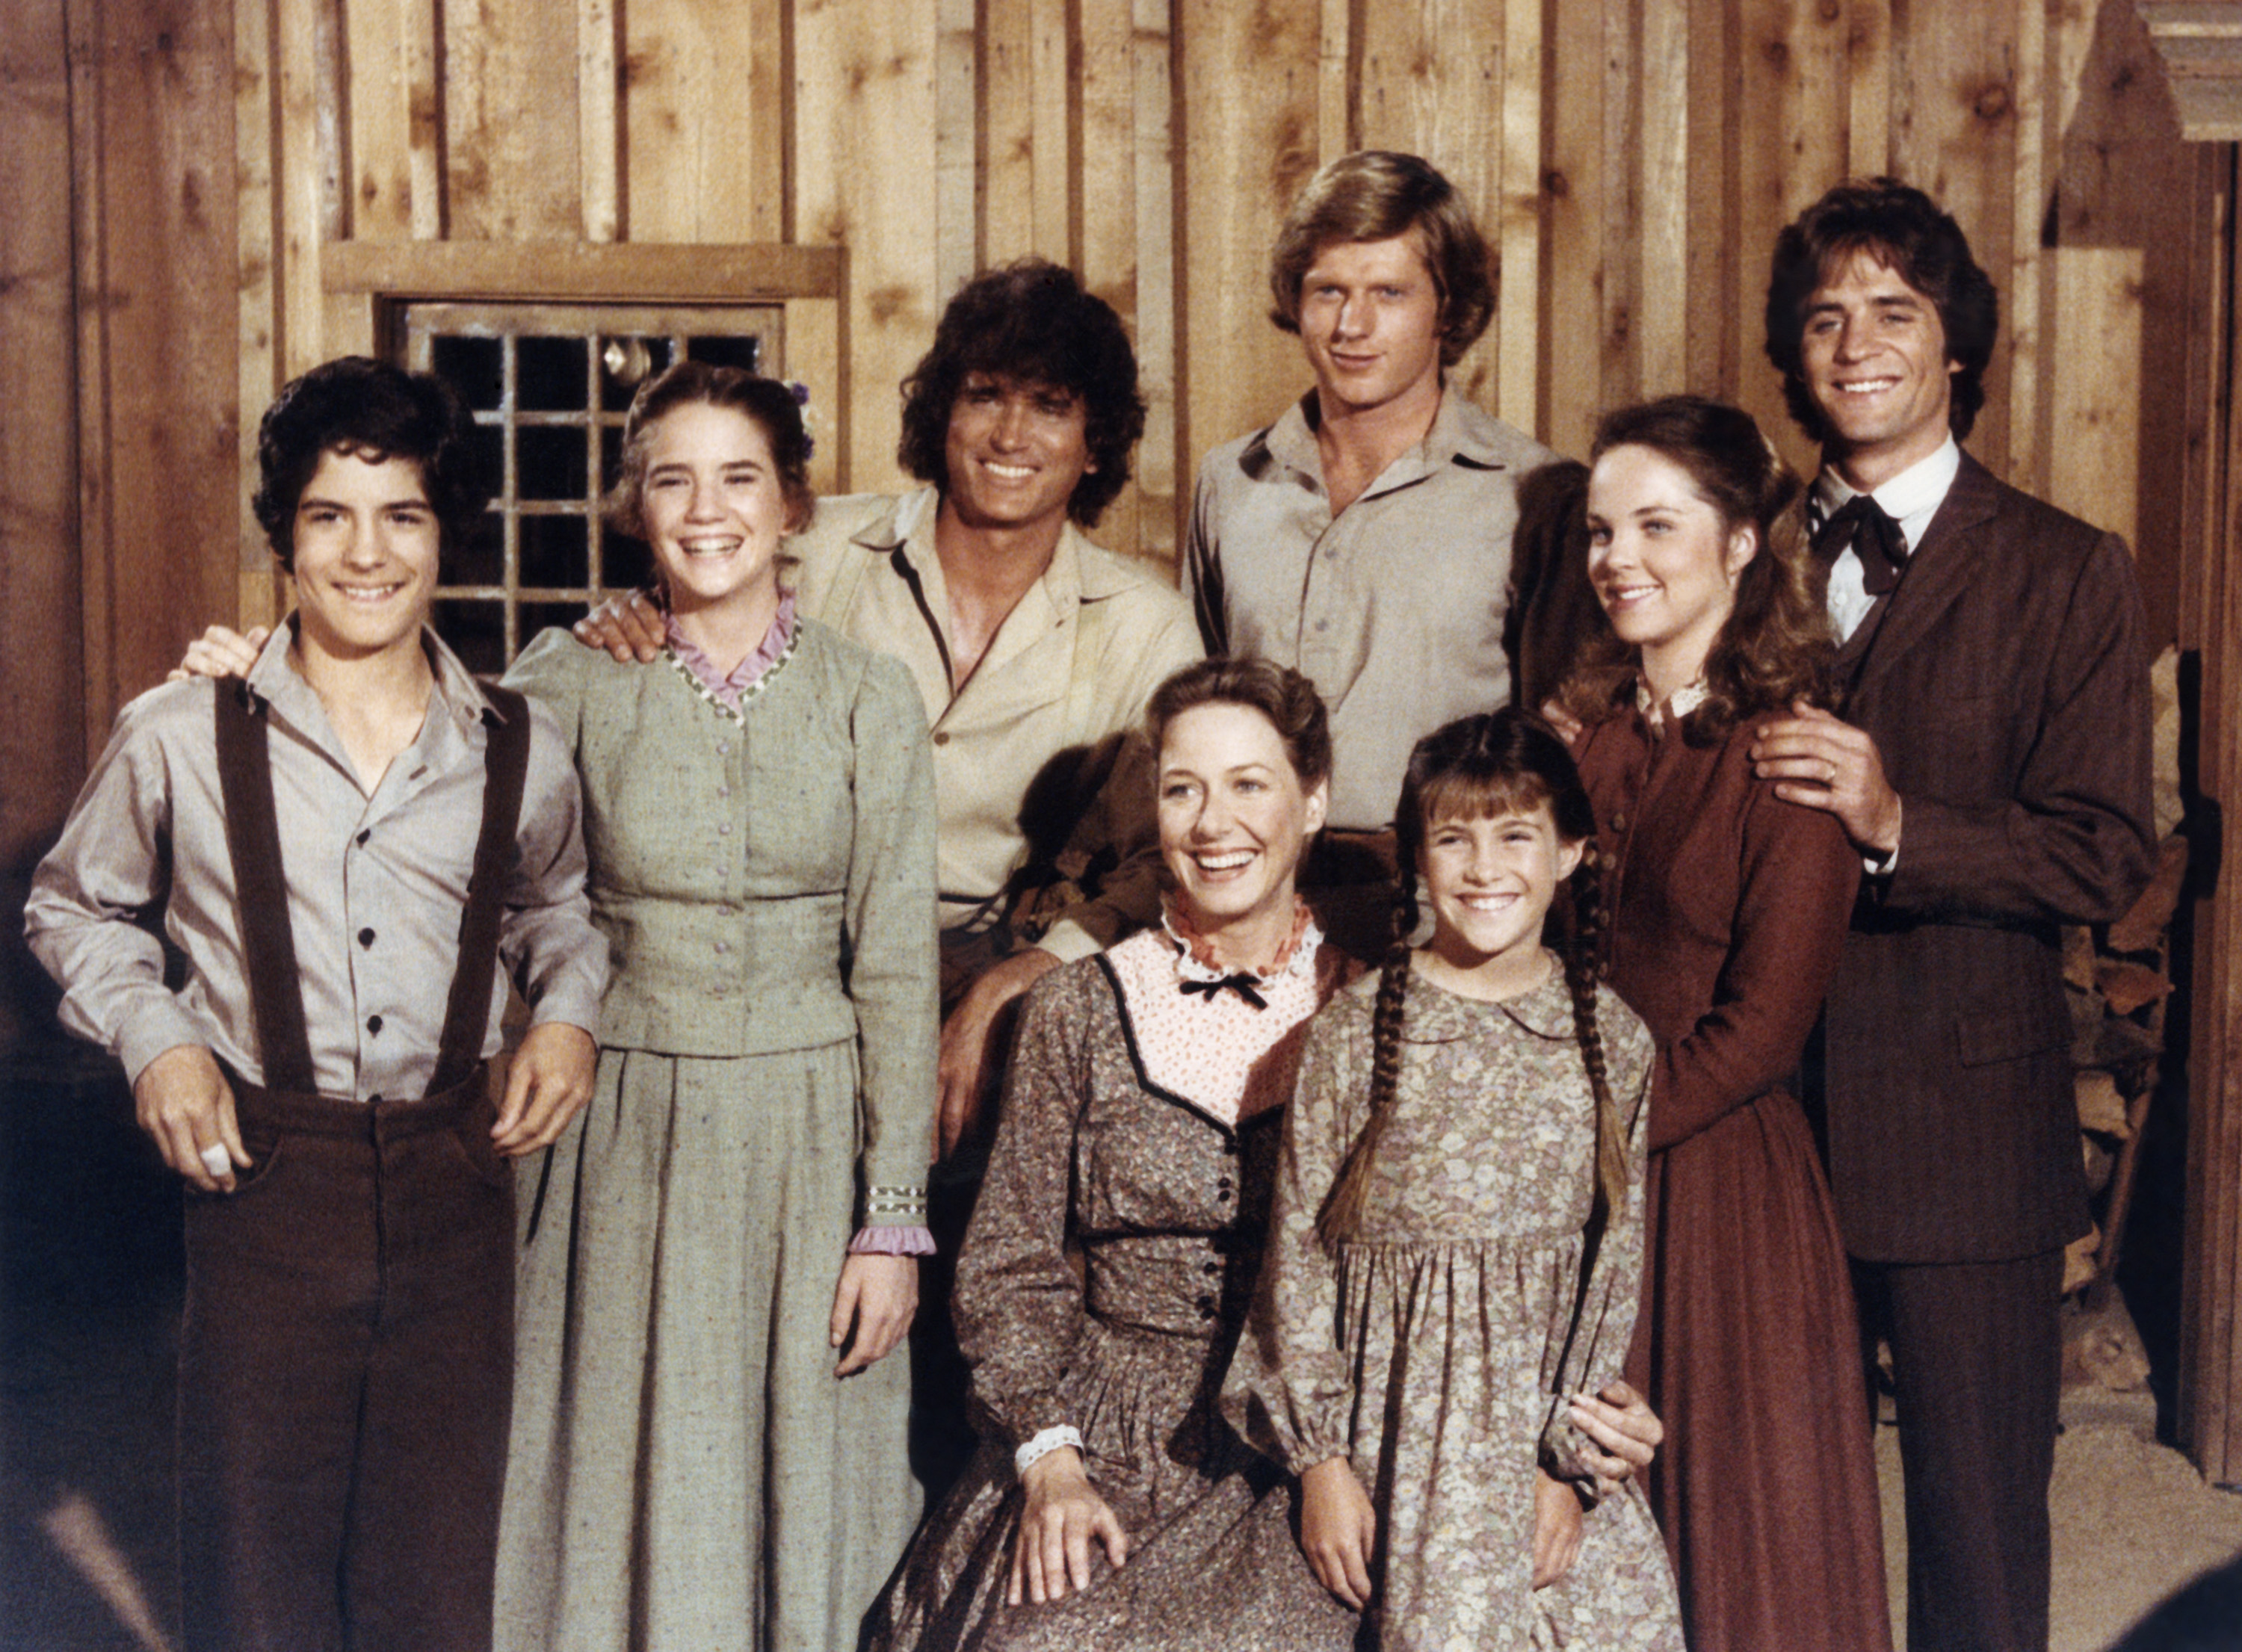 The Season 7 cast of 'Little House on the Prairie'